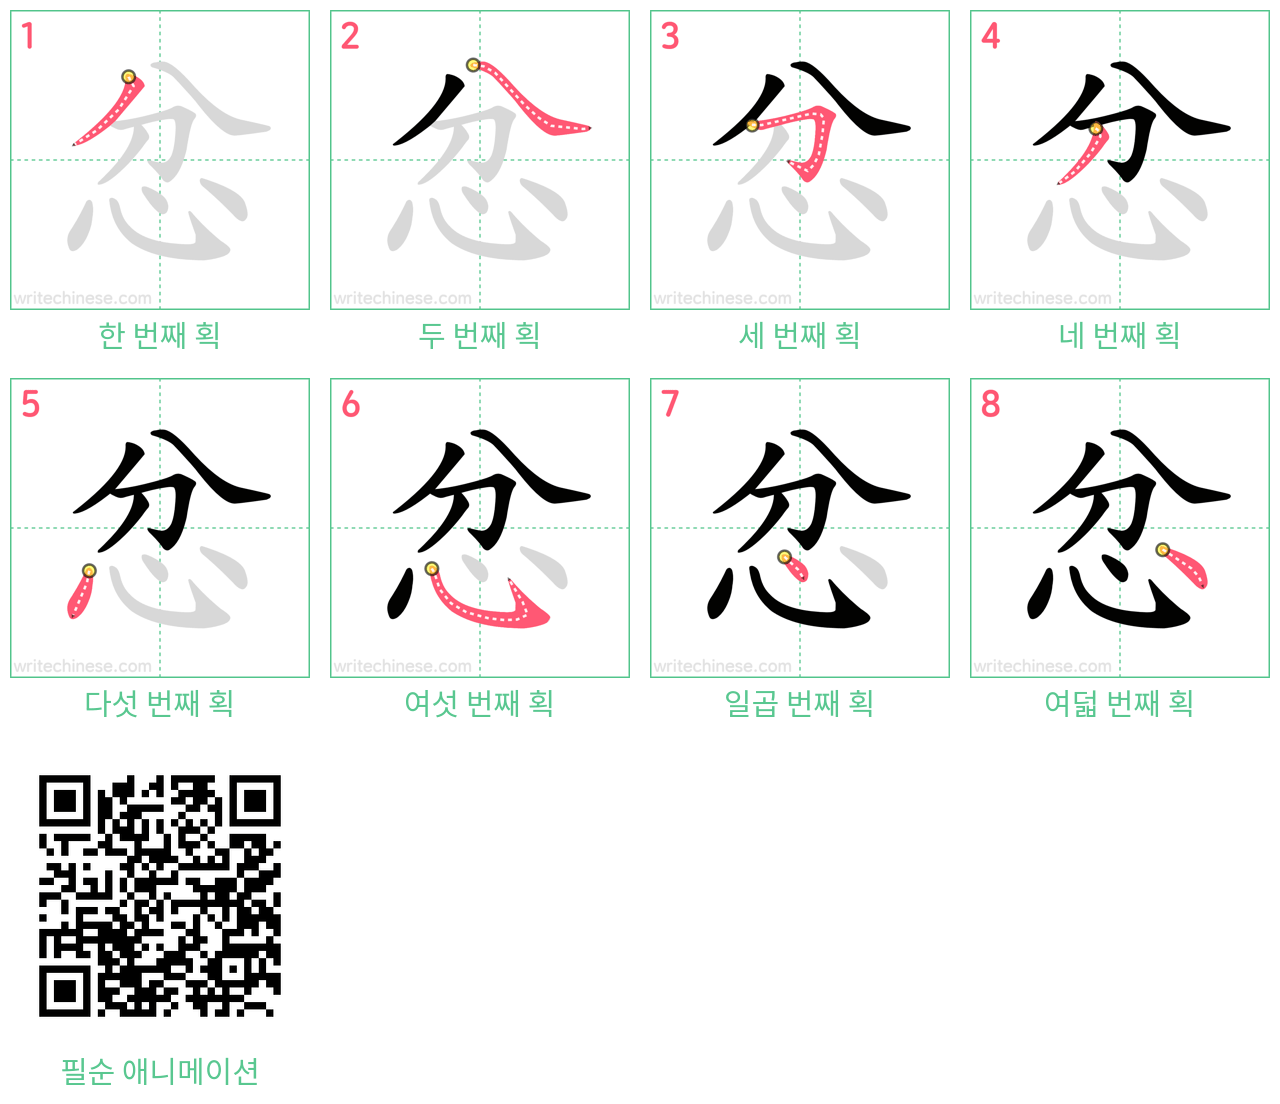 忿 step-by-step stroke order diagrams